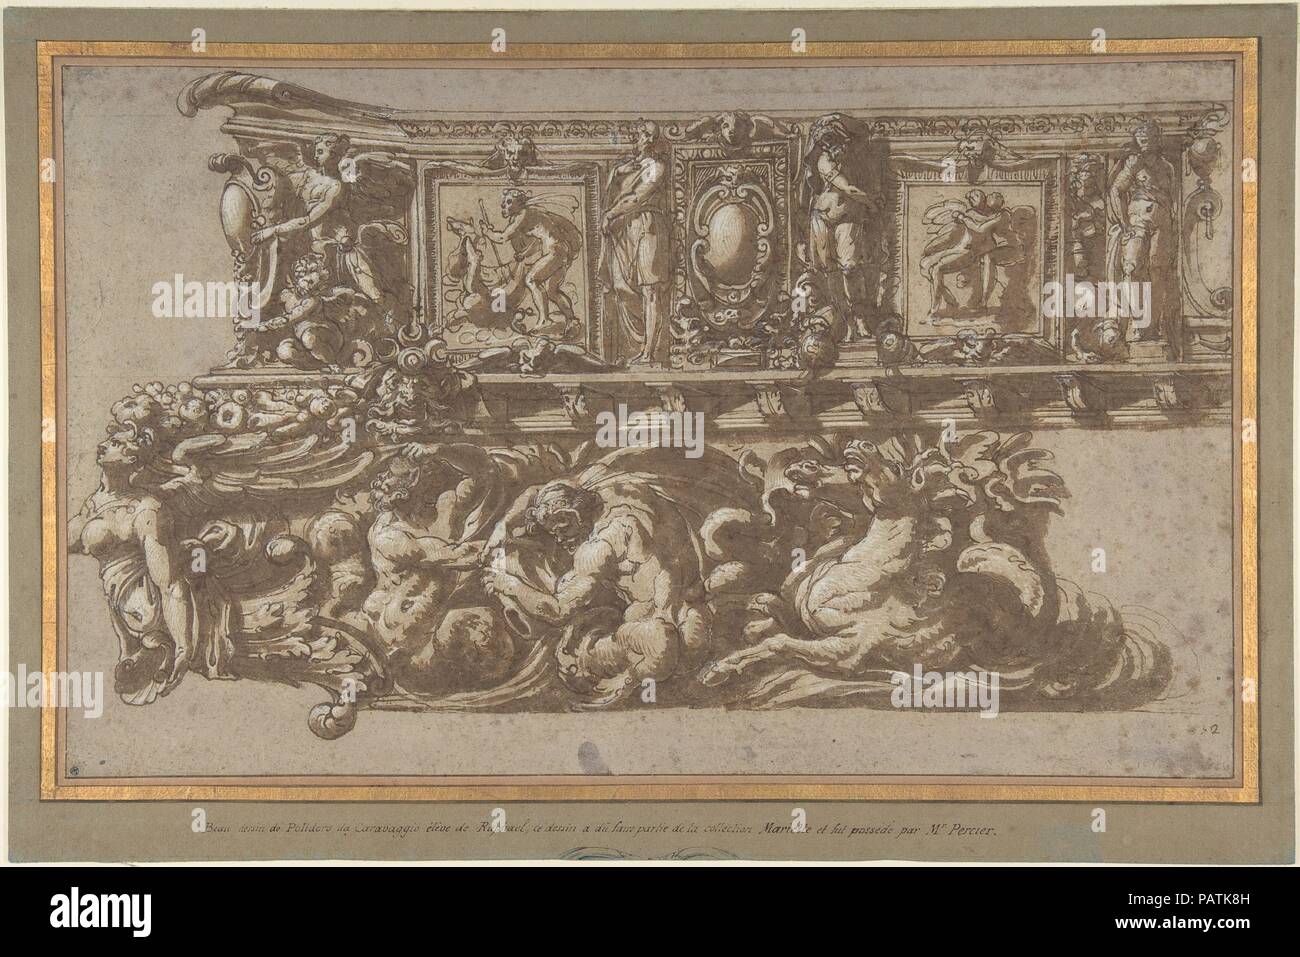 Design per un festival galleggiante o Inclus. Artista: Cerchio di Perino del Vaga (Pietro Buonaccorsi) (italiano, Firenze Roma 1501-1547); eventualmente da Prospero Fontana (Italiano, 1512-1597 Bologna Bologna). Dimensioni: foglio: 10 1/4 × 16 7/8 in. (26,1 × 42,8 cm) Montaggio: 12 3/8 in. × 18 11/16 in. (31,4 × 47,4 cm). Data: ca. 1530-40. Un altro studio con alcune variazioni per questa complessa costruzione decorativa, che possono anche essere stati destinati per un festival galleggiante, è nel Musée des Beaux-Arts, Rennes (inv. C 65,1). Entrambi i disegni in New York e Rennes recare un tradizionale attribuzione a Polidoro da Cara Foto Stock